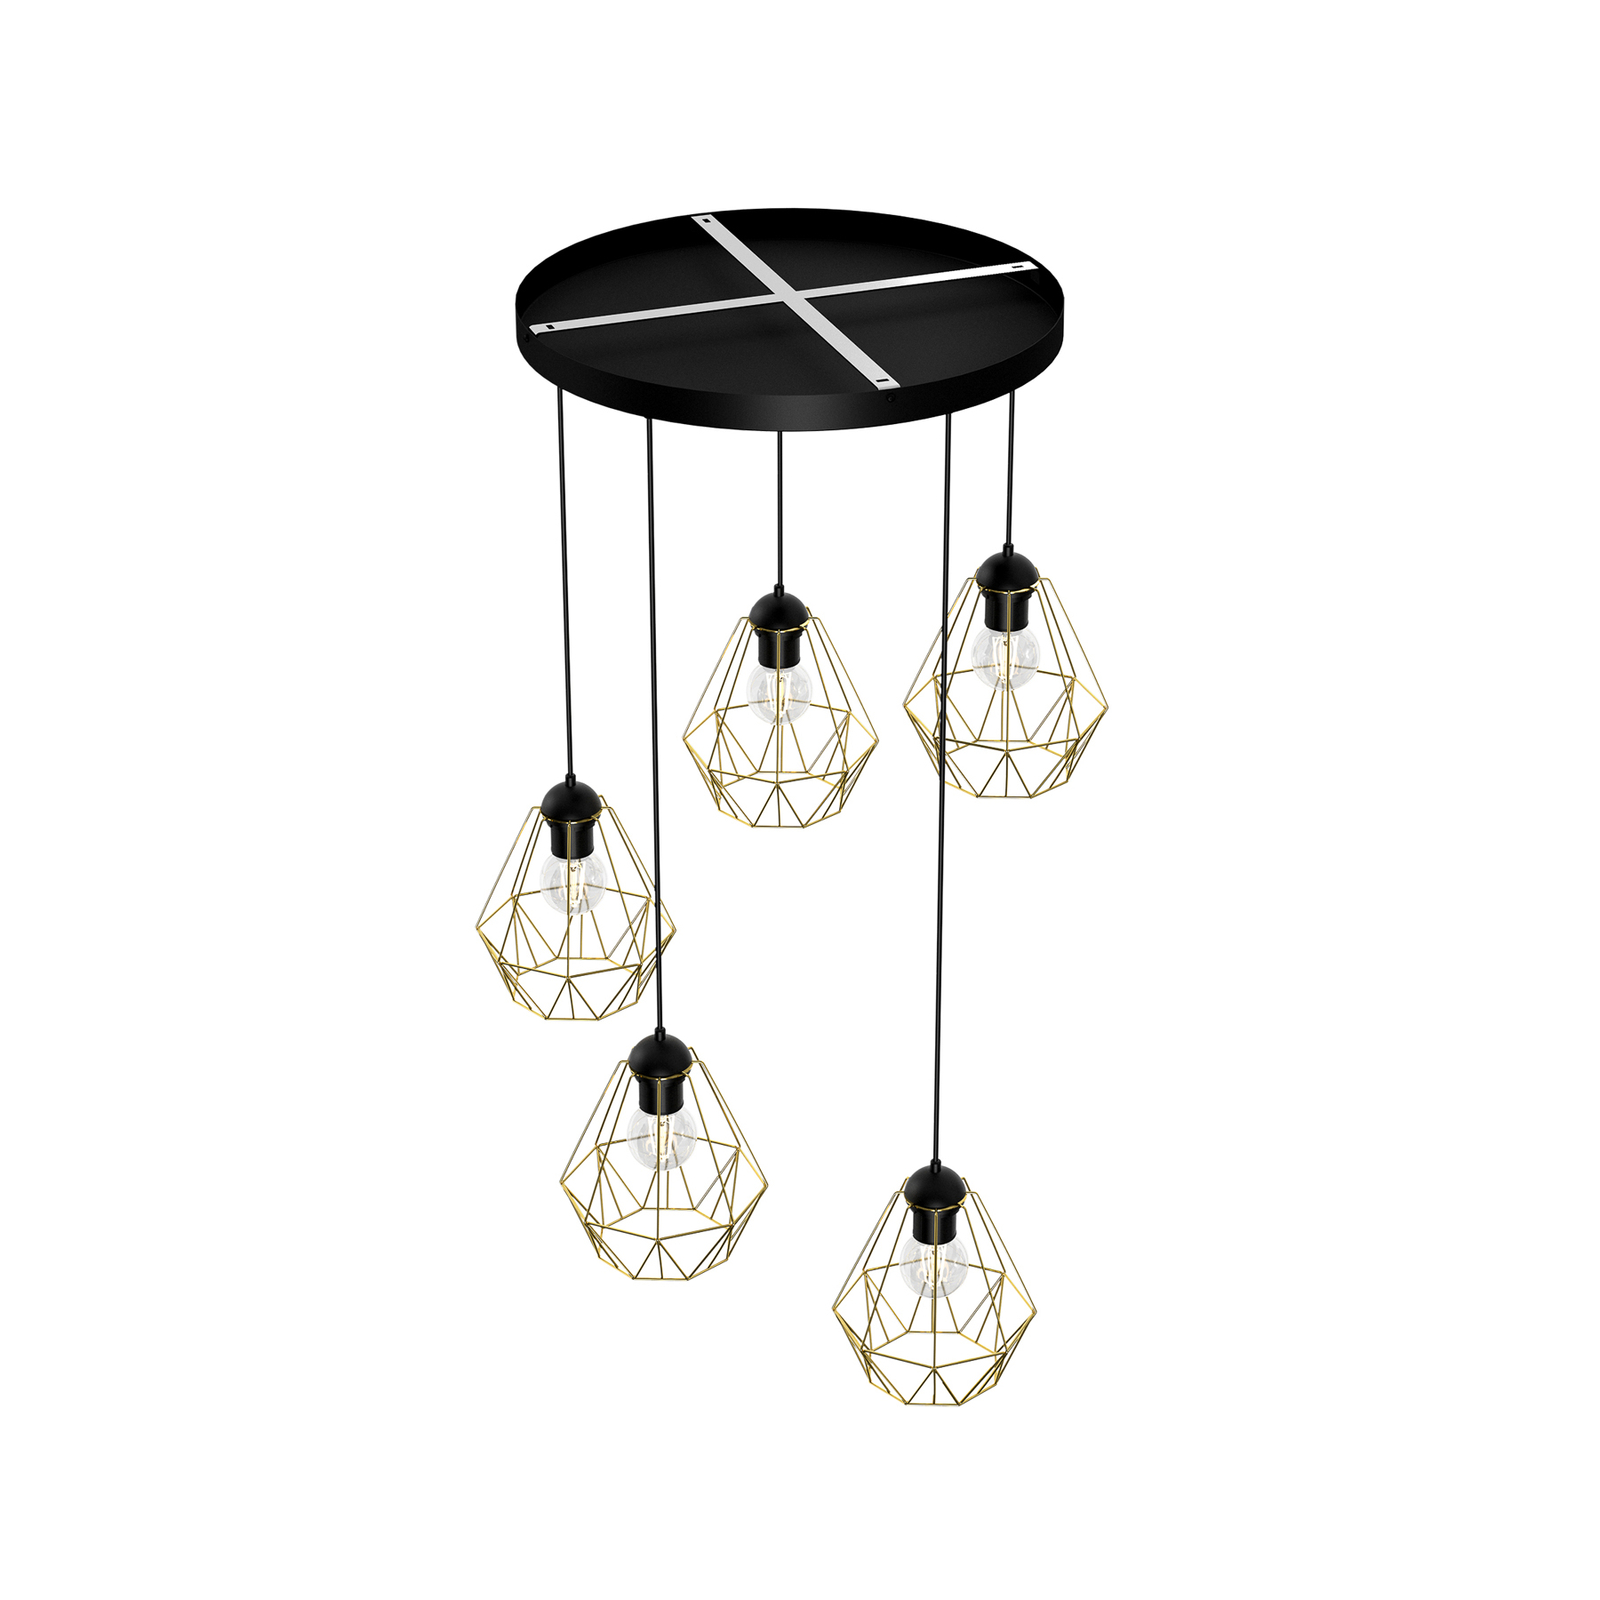 Jin hanglamp, zwart/messing, 5-lamps, rond